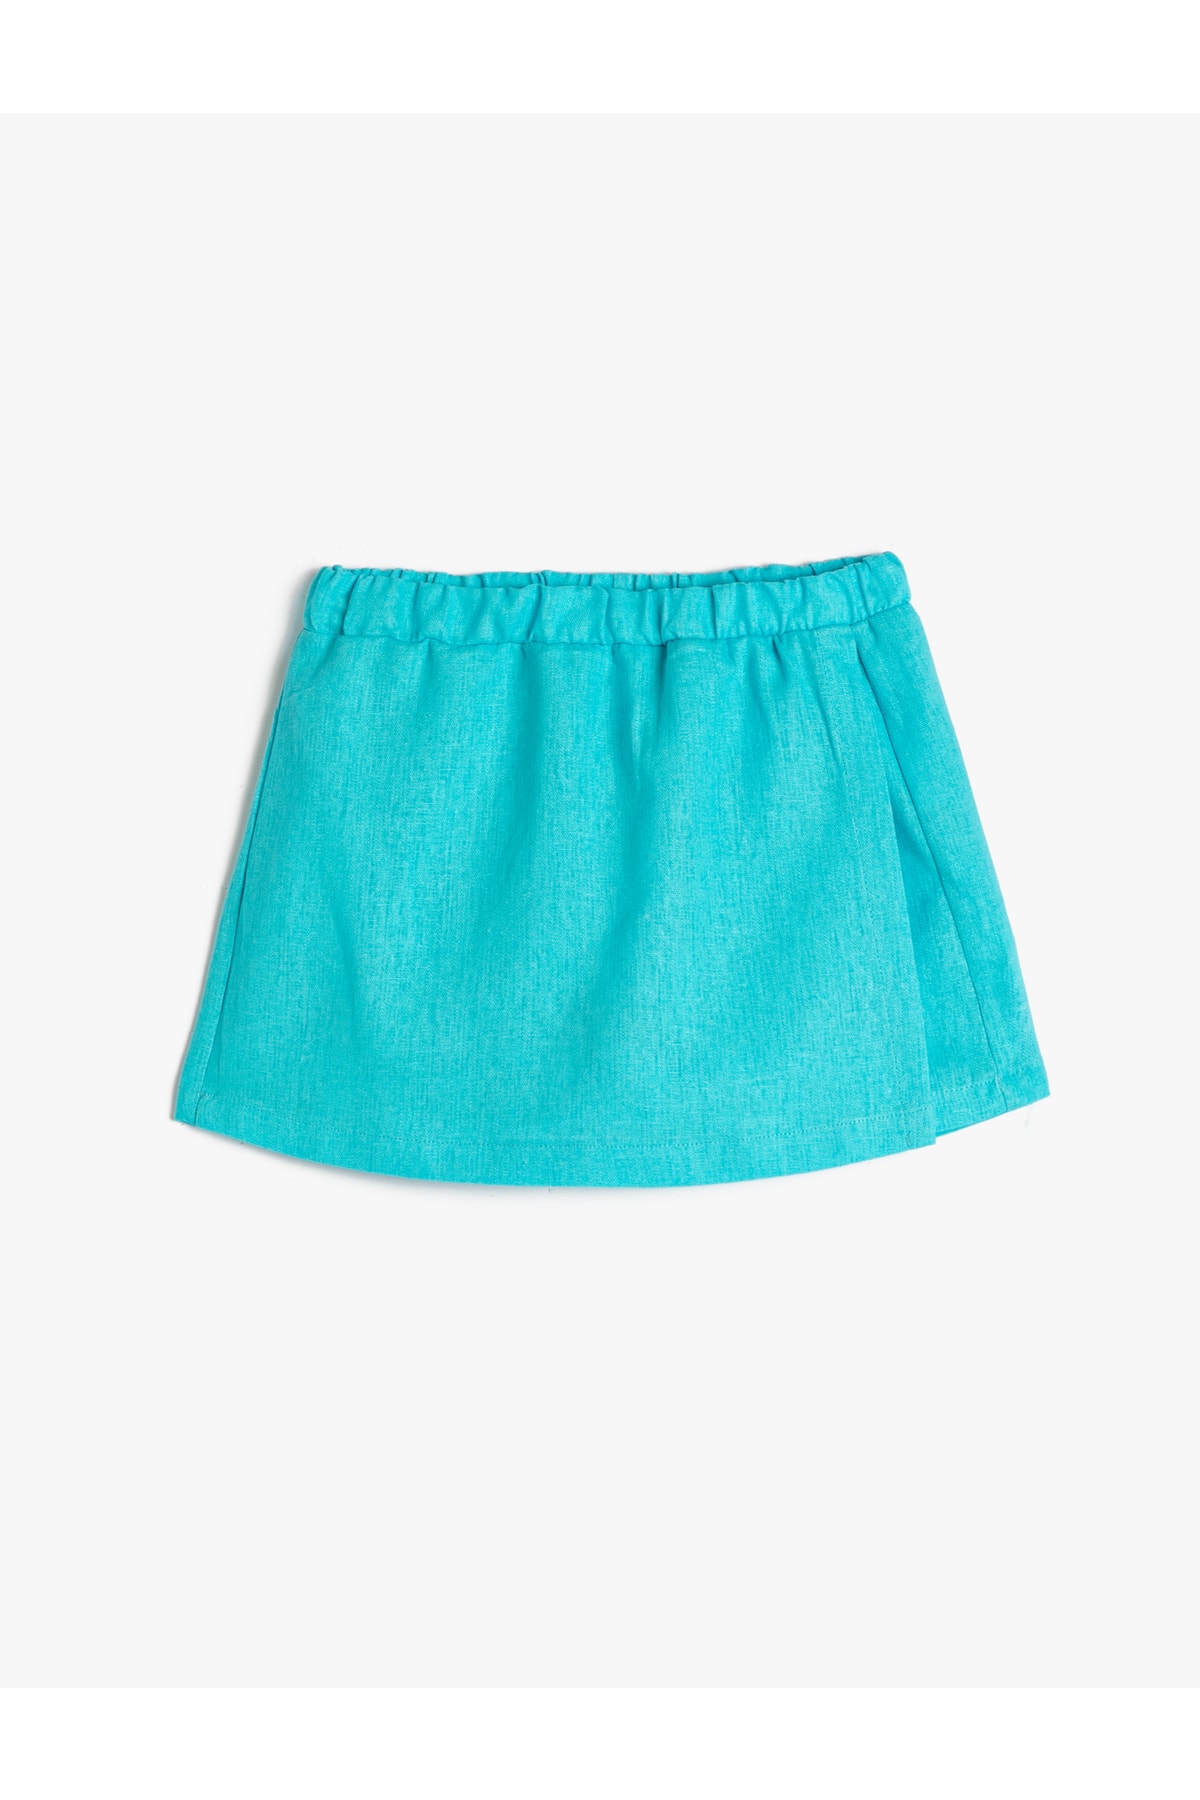 Levně Koton Linen Shorts Skirt Elastic Waist Wrap